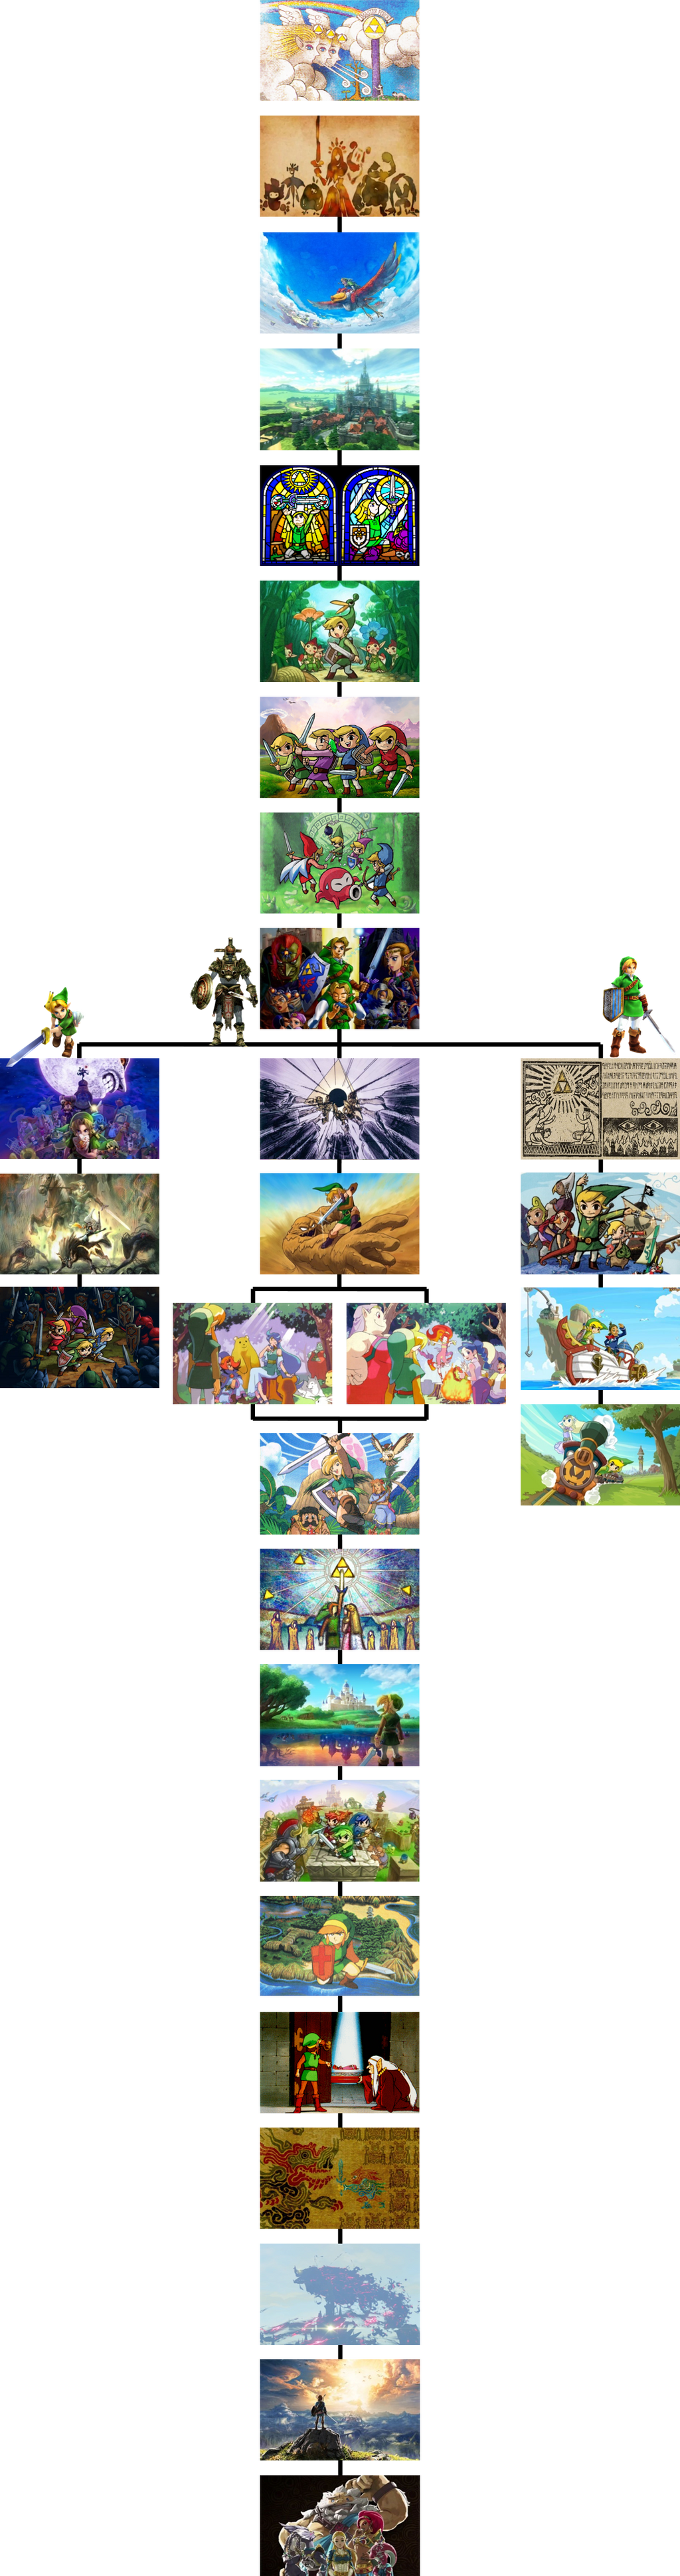 The Legend Of Zelda Timeline By The4thsnake On Deviantart